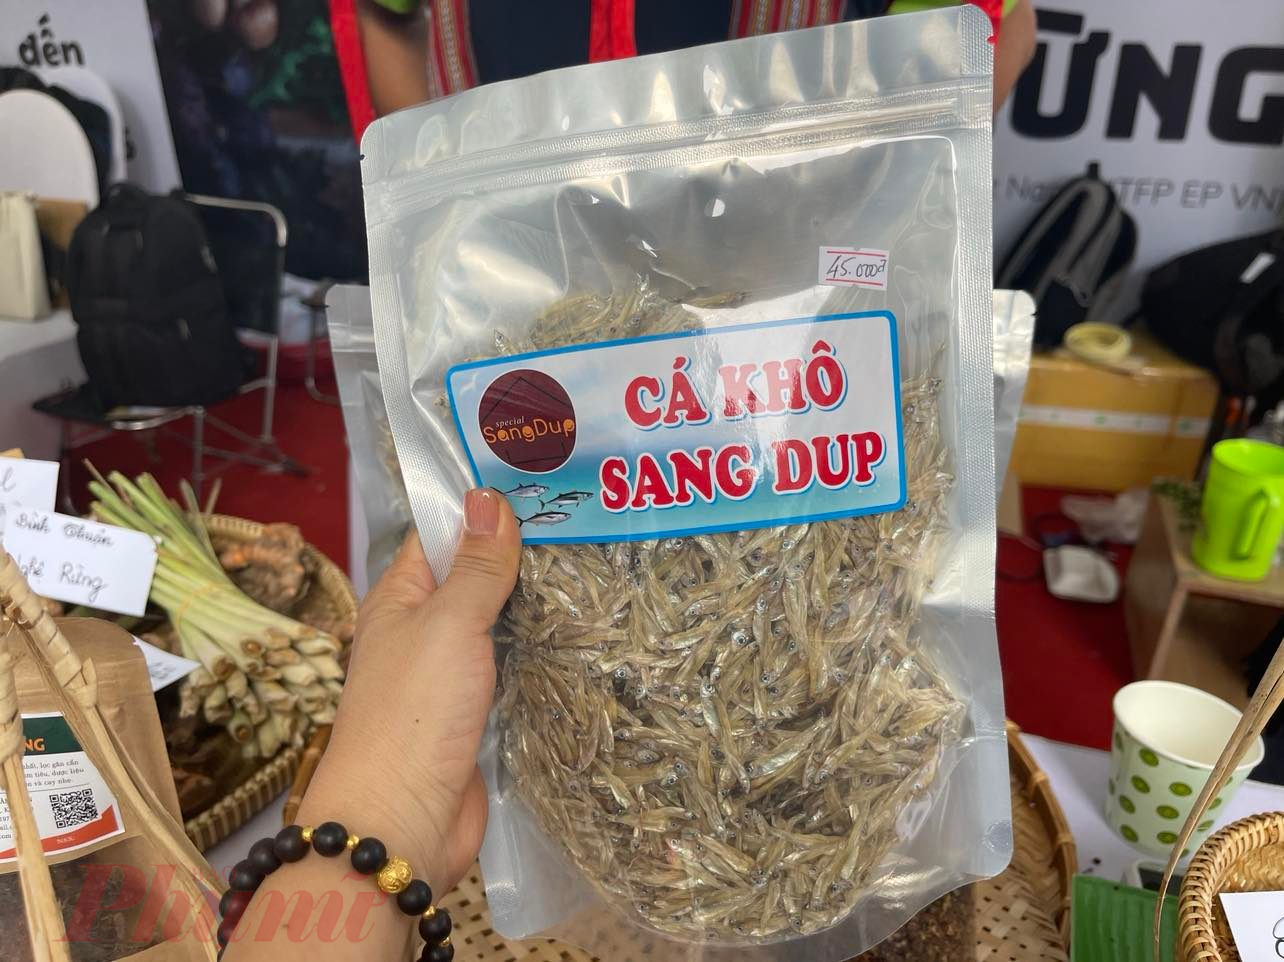 Cá khô Sang Dup ở lồng hồ Se San 4 giáp biên giới Campuchia, 45.000 đồng/gói 250gr; có thể chế biến bằng cách rang, trộn với xoài, rau quế...